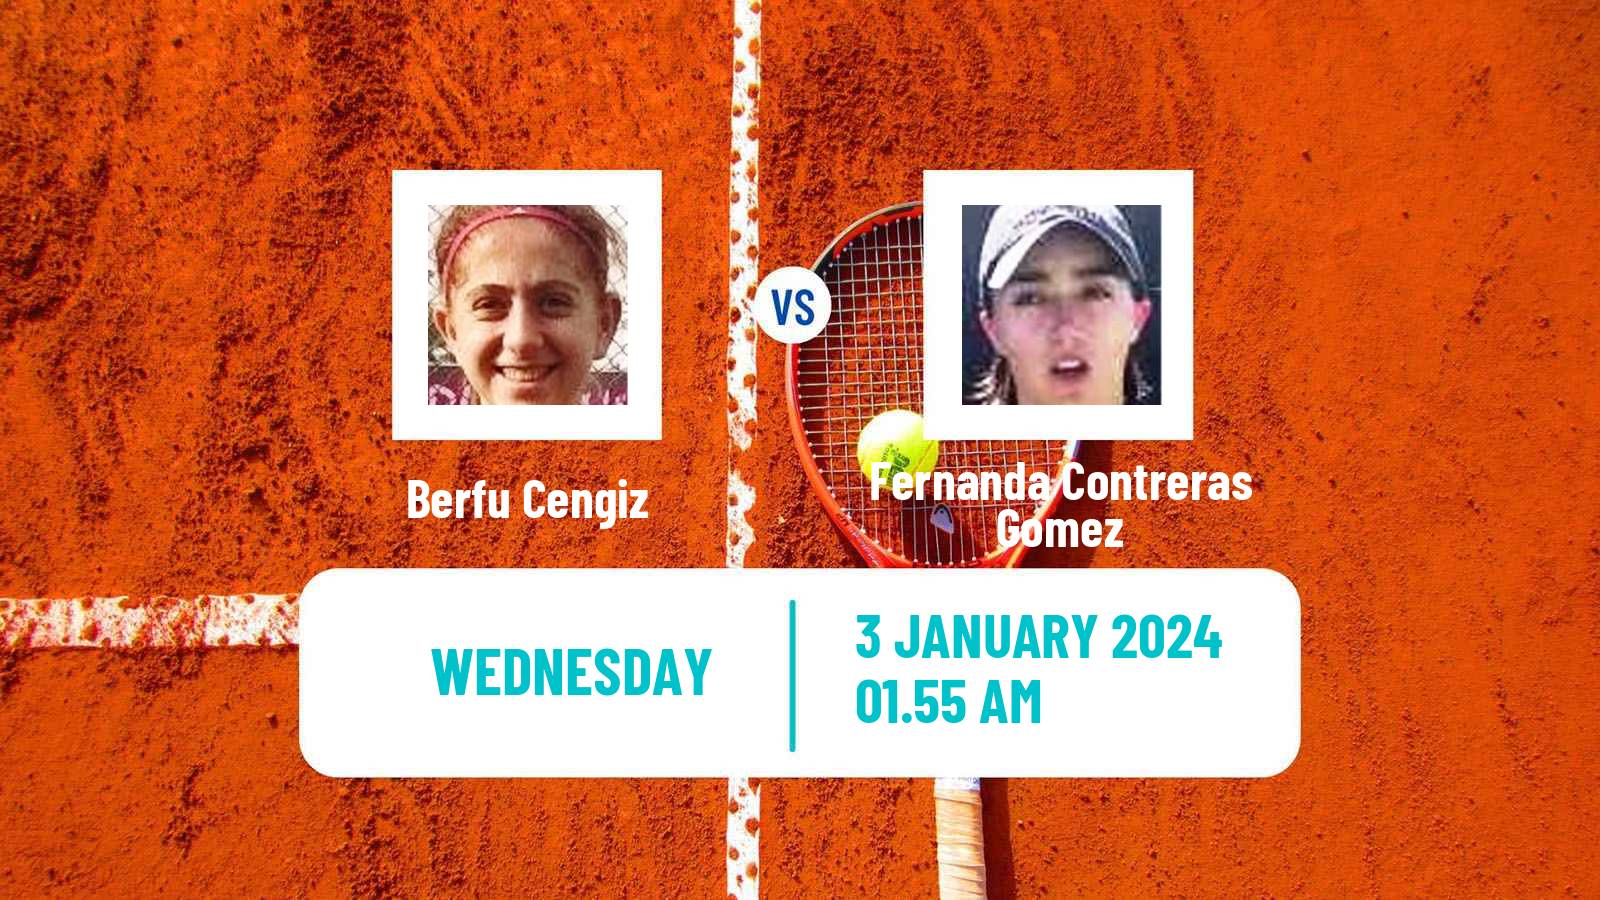 Tennis ITF W50 Nonthaburi Women Berfu Cengiz - Fernanda Contreras Gomez